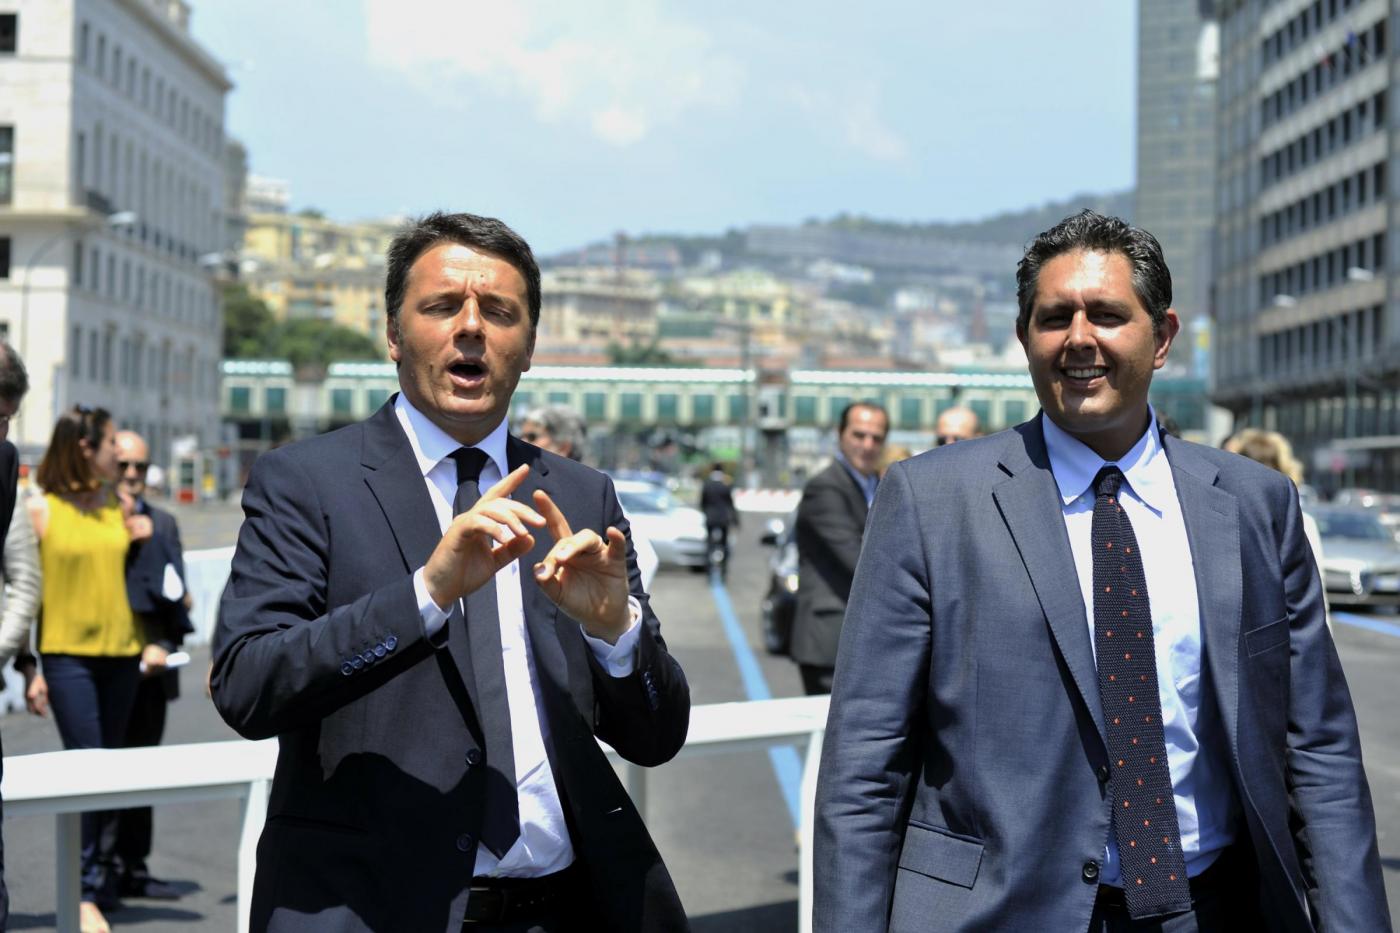 Toti punta ad un'alleanza con Renzi: 